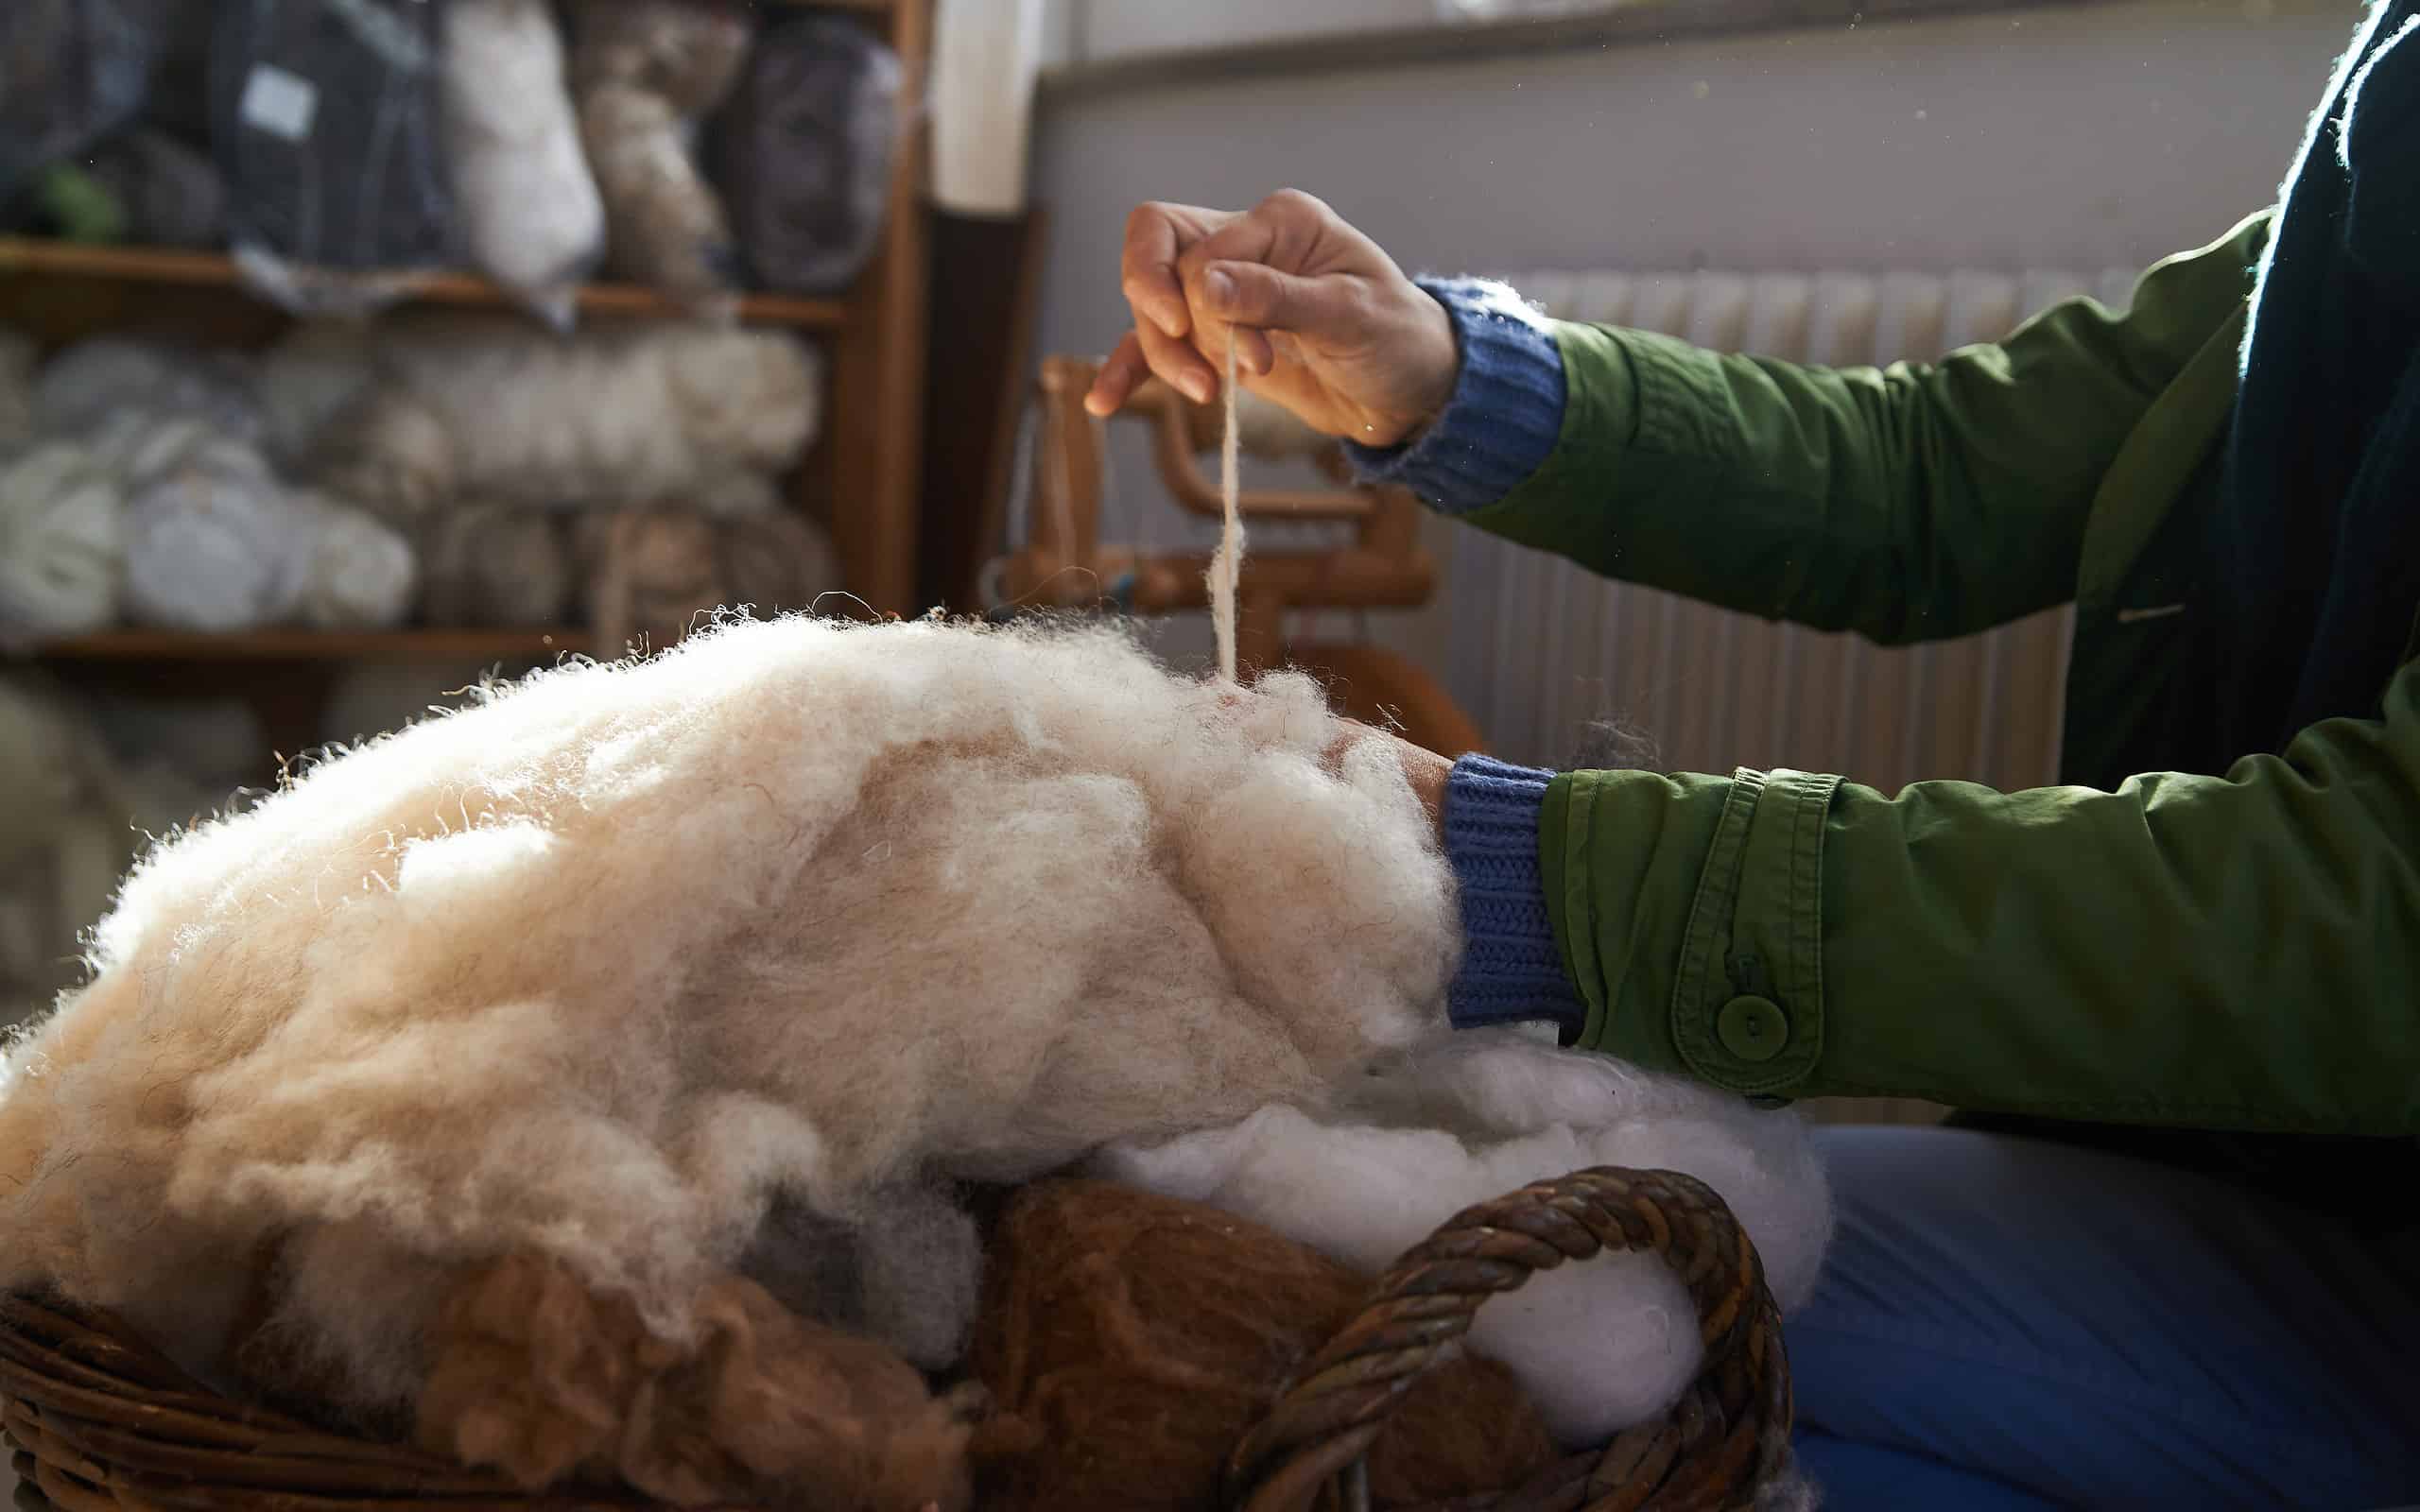 handmade manufacturing yarns from natural sheep wool